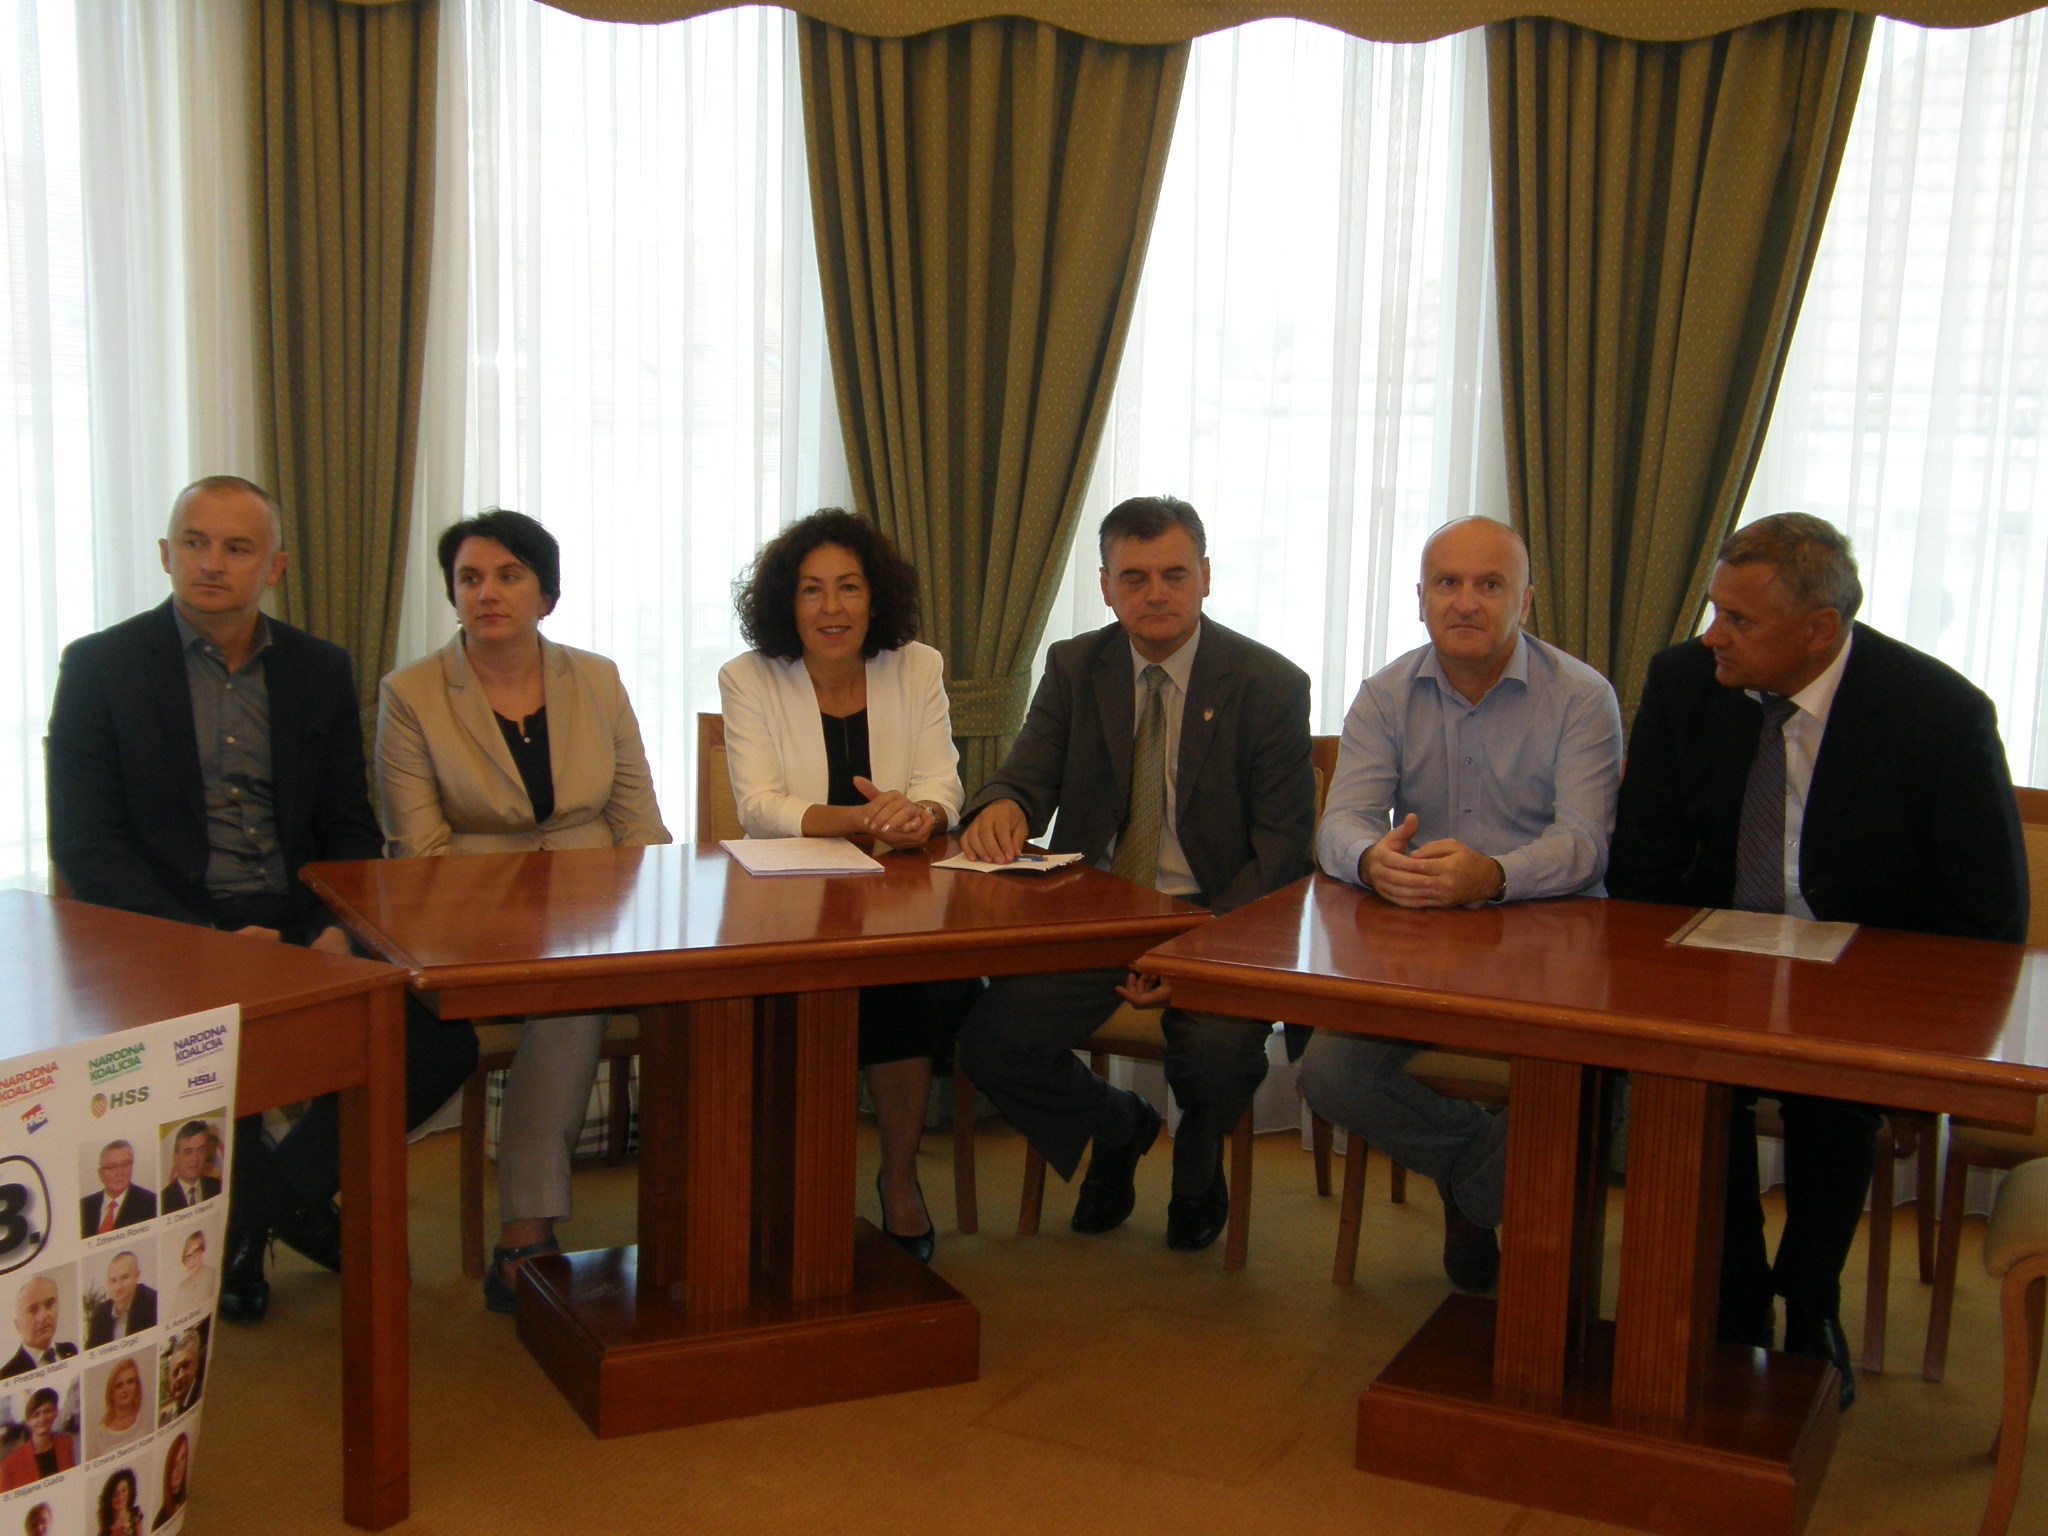 IZBORI 2016 - Narodna koalicija predstavila program i kandidate za 5. izbornu jedinicu